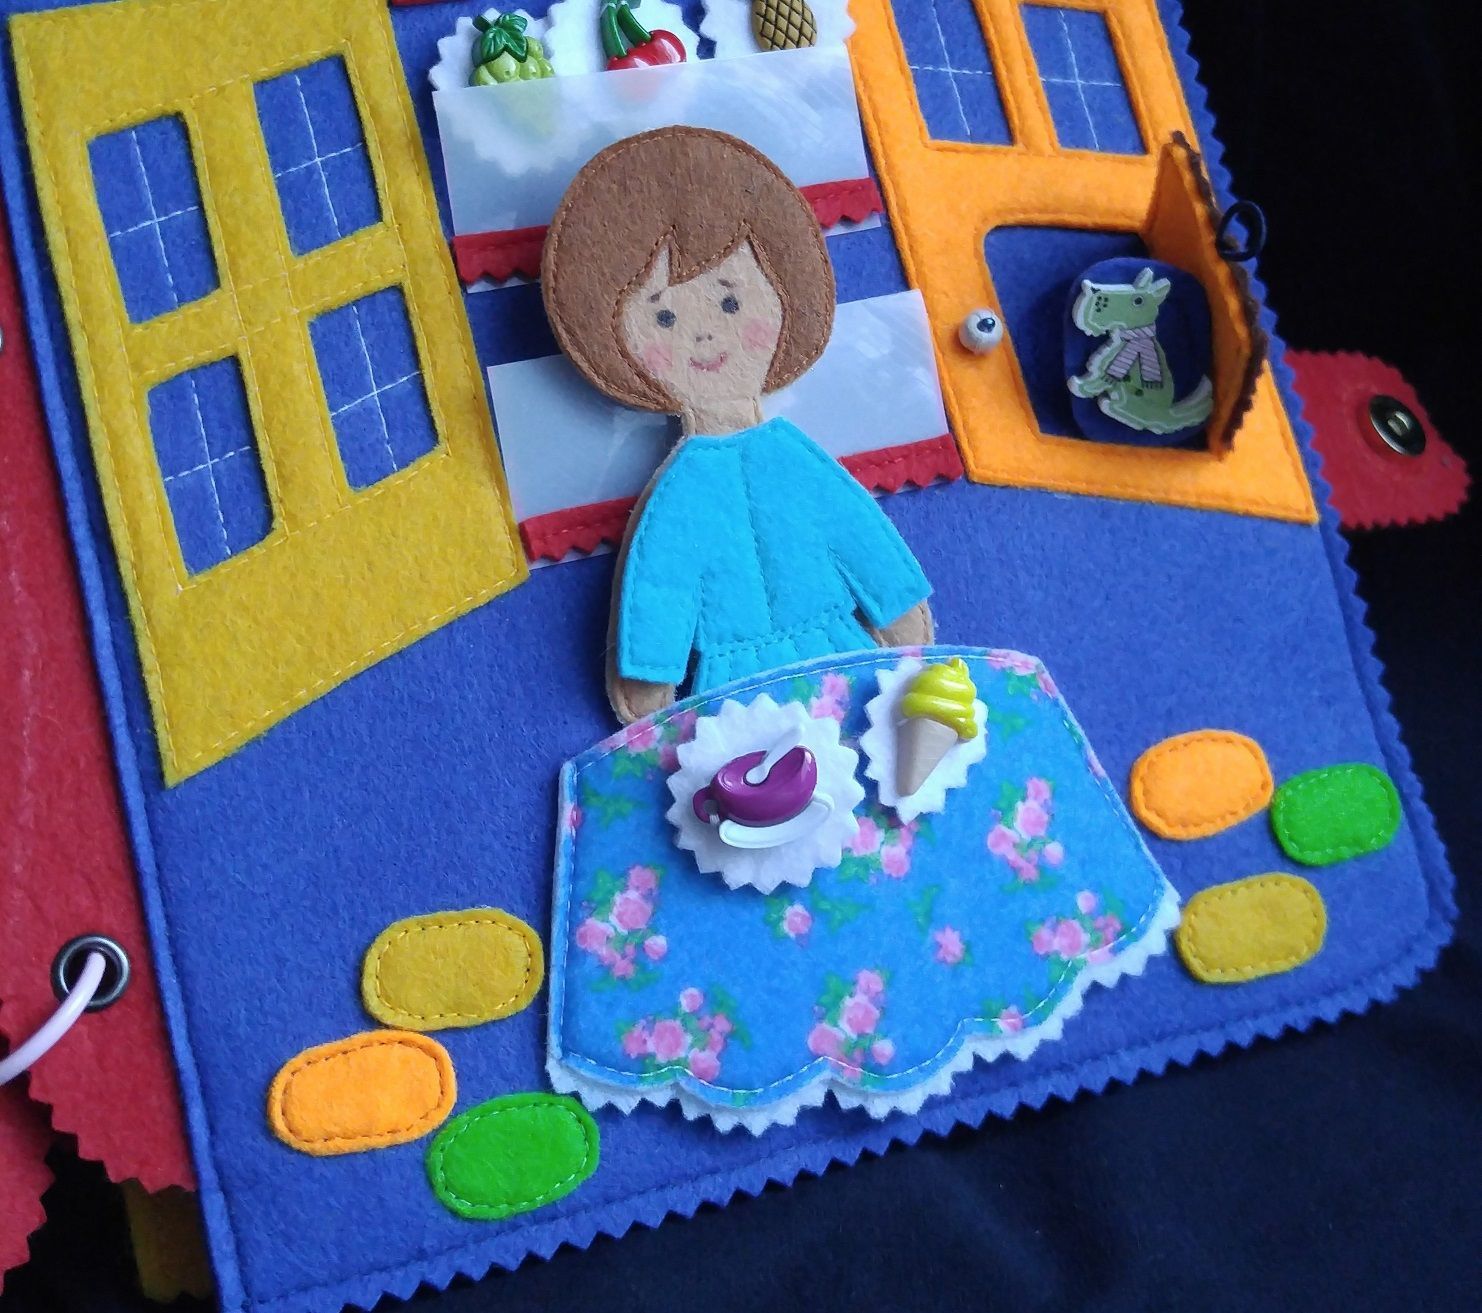 Развивающие книжки из фетра и игрушки для детей от 0 до 4 лет